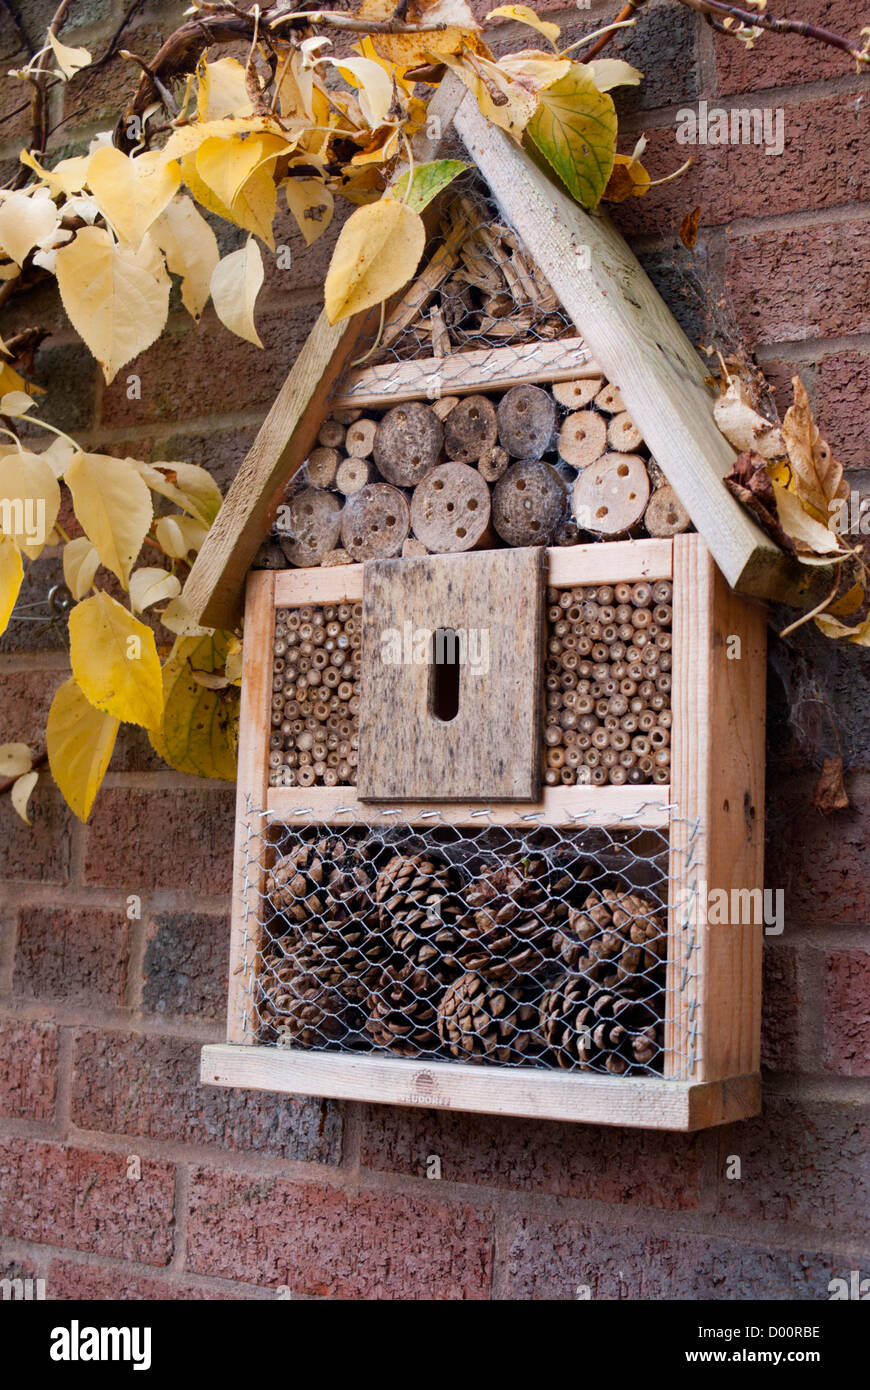 Bienen und Insekten Box Garten Wand befestigt. Stockfoto